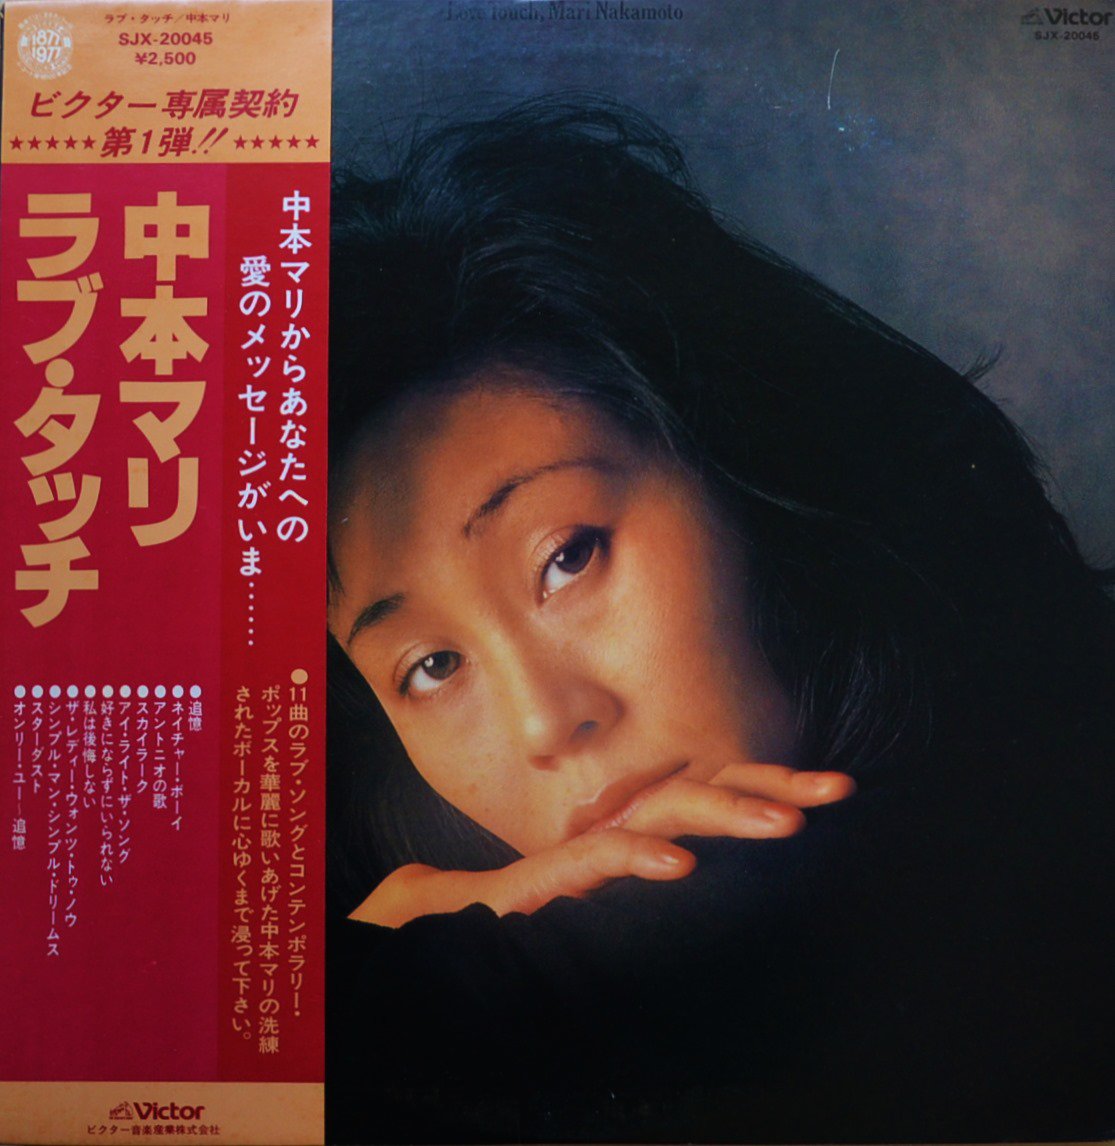 中本マリ MARI NAKAMOTO / ラブ・タッチ LOVE TOUCH (LP)